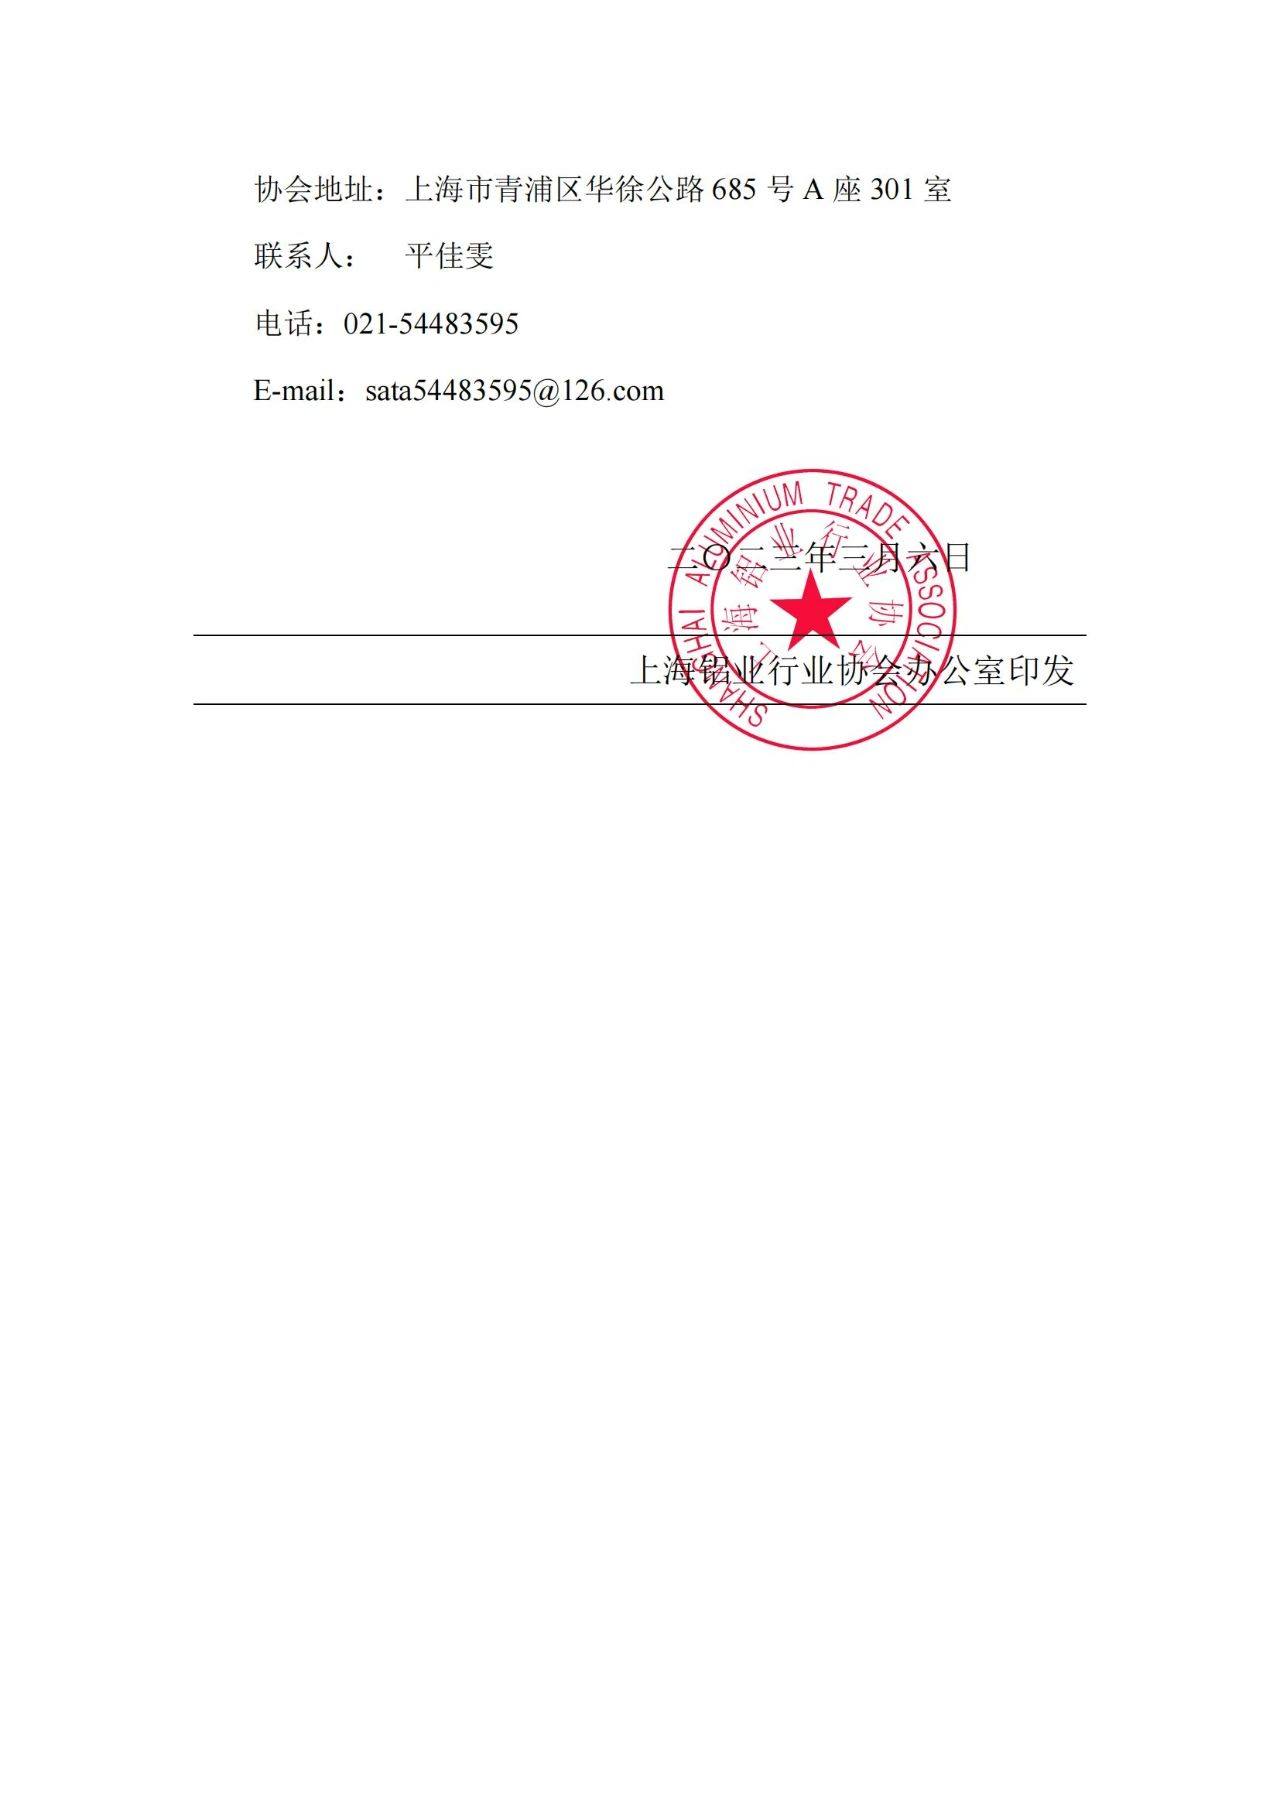 上海鋁協關於《車用寬幅薄壁鋁型材》、《高輕度鋁合金擠壓模具》2項團體標準立項的公告